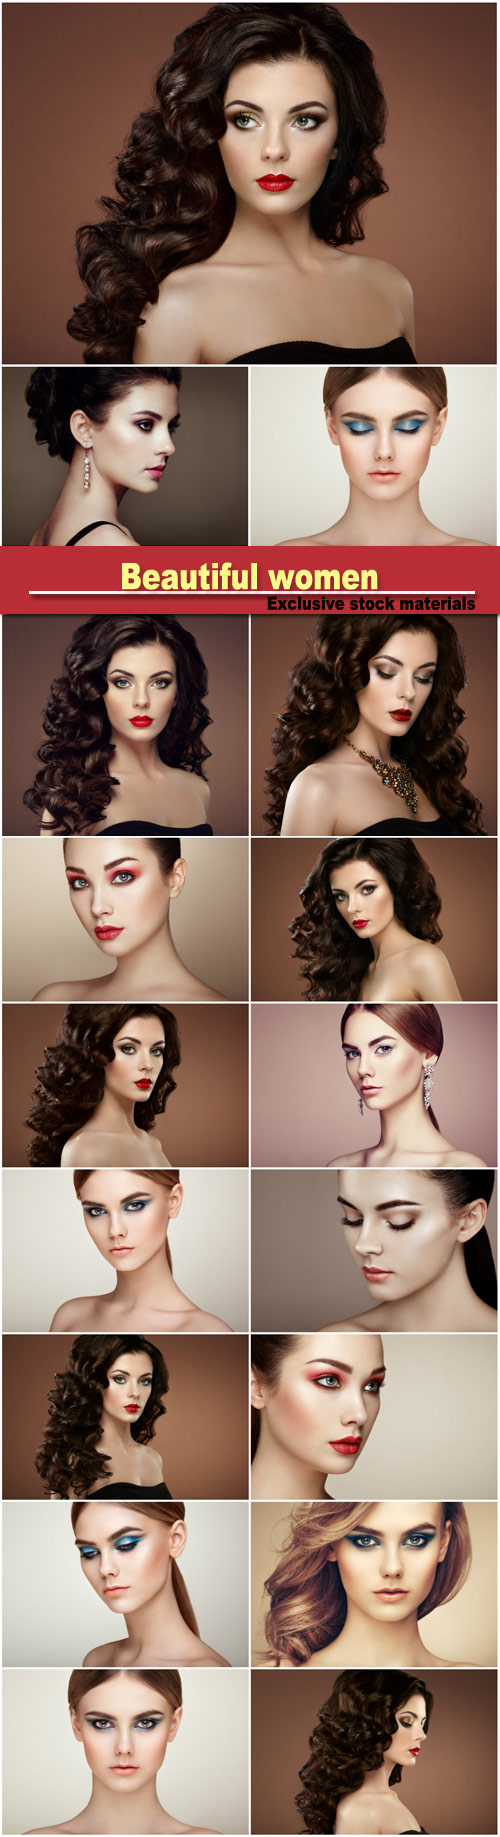 Beautiful women, stylish makeup, hairstyles